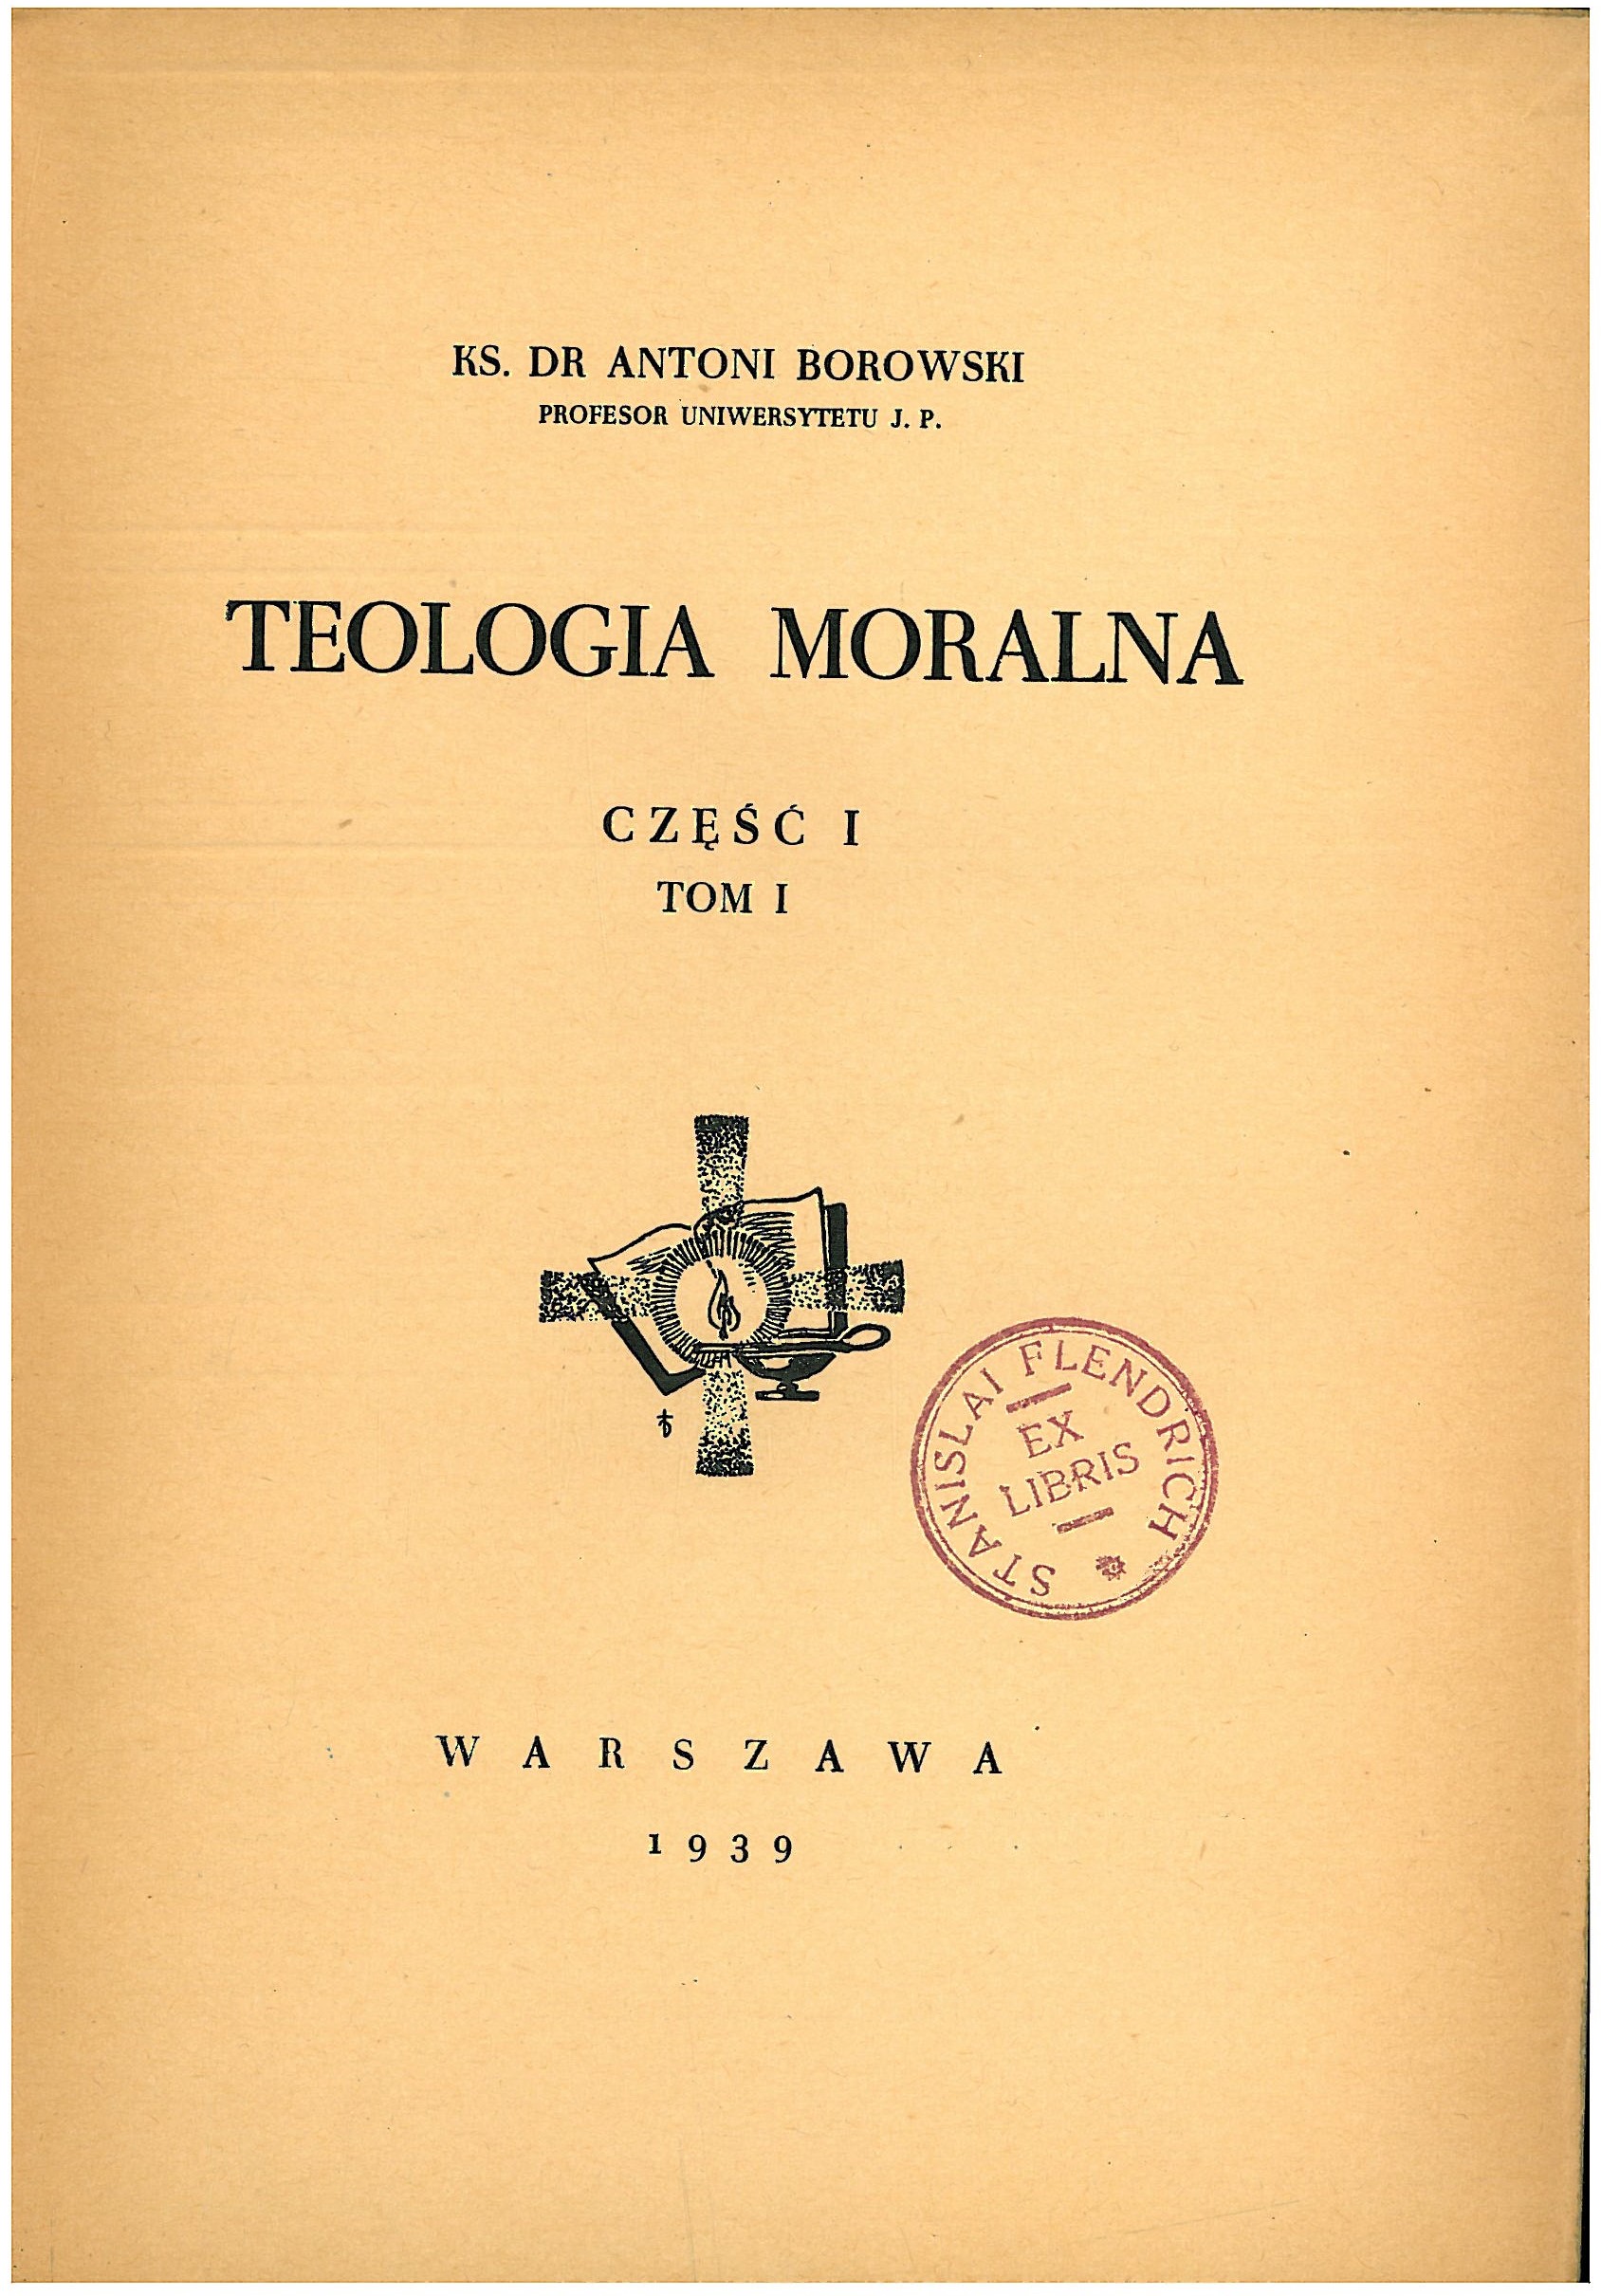 Ks. Dr Antoni Borowski, Teologia moralna. Cz. I. T. 1. Warszawa 1939